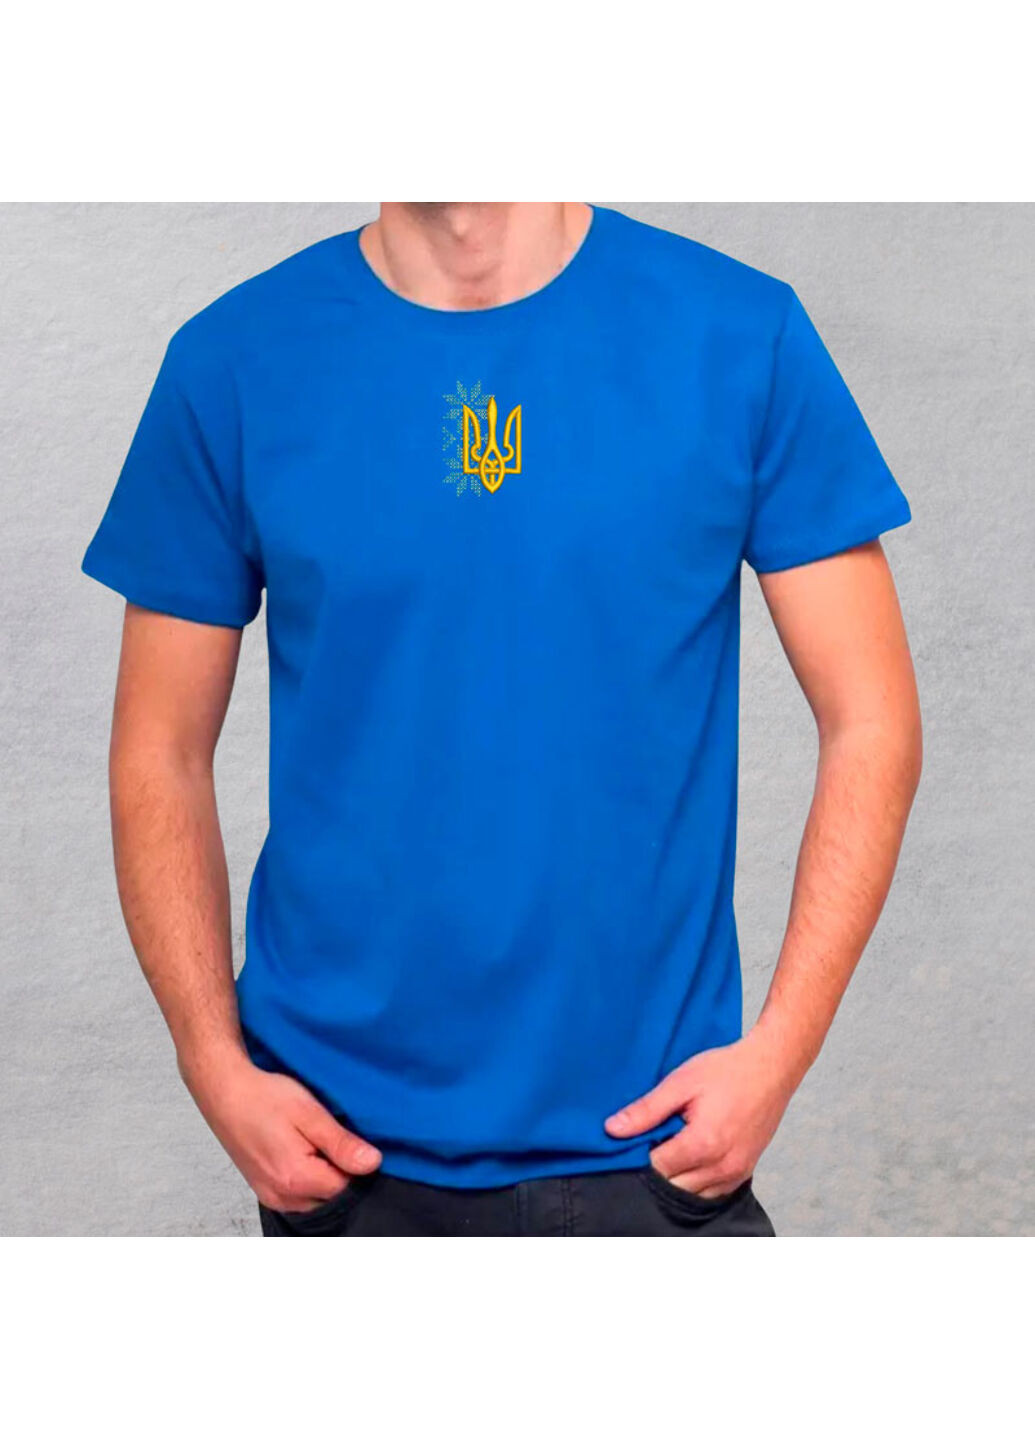 Синяя футболка з вишивкою тризуба 01-4 мужская синий m No Brand